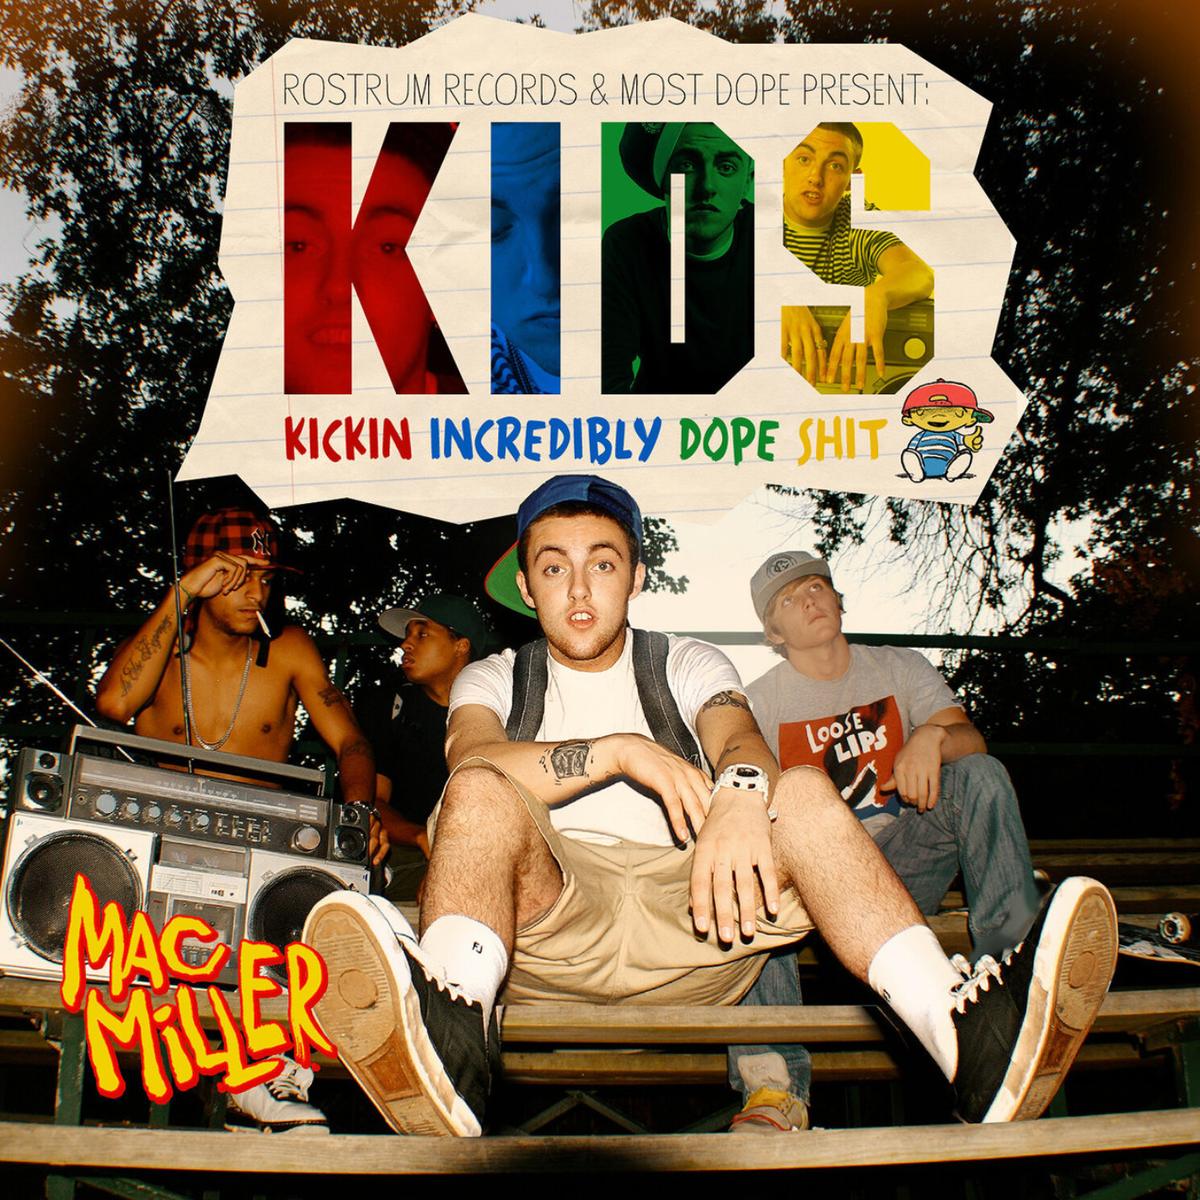 Estrenan versión deluxe del mixtape ‘K.I.D.S.’ de Mac Miller, por su décimo aniversario. Cusica Plus.